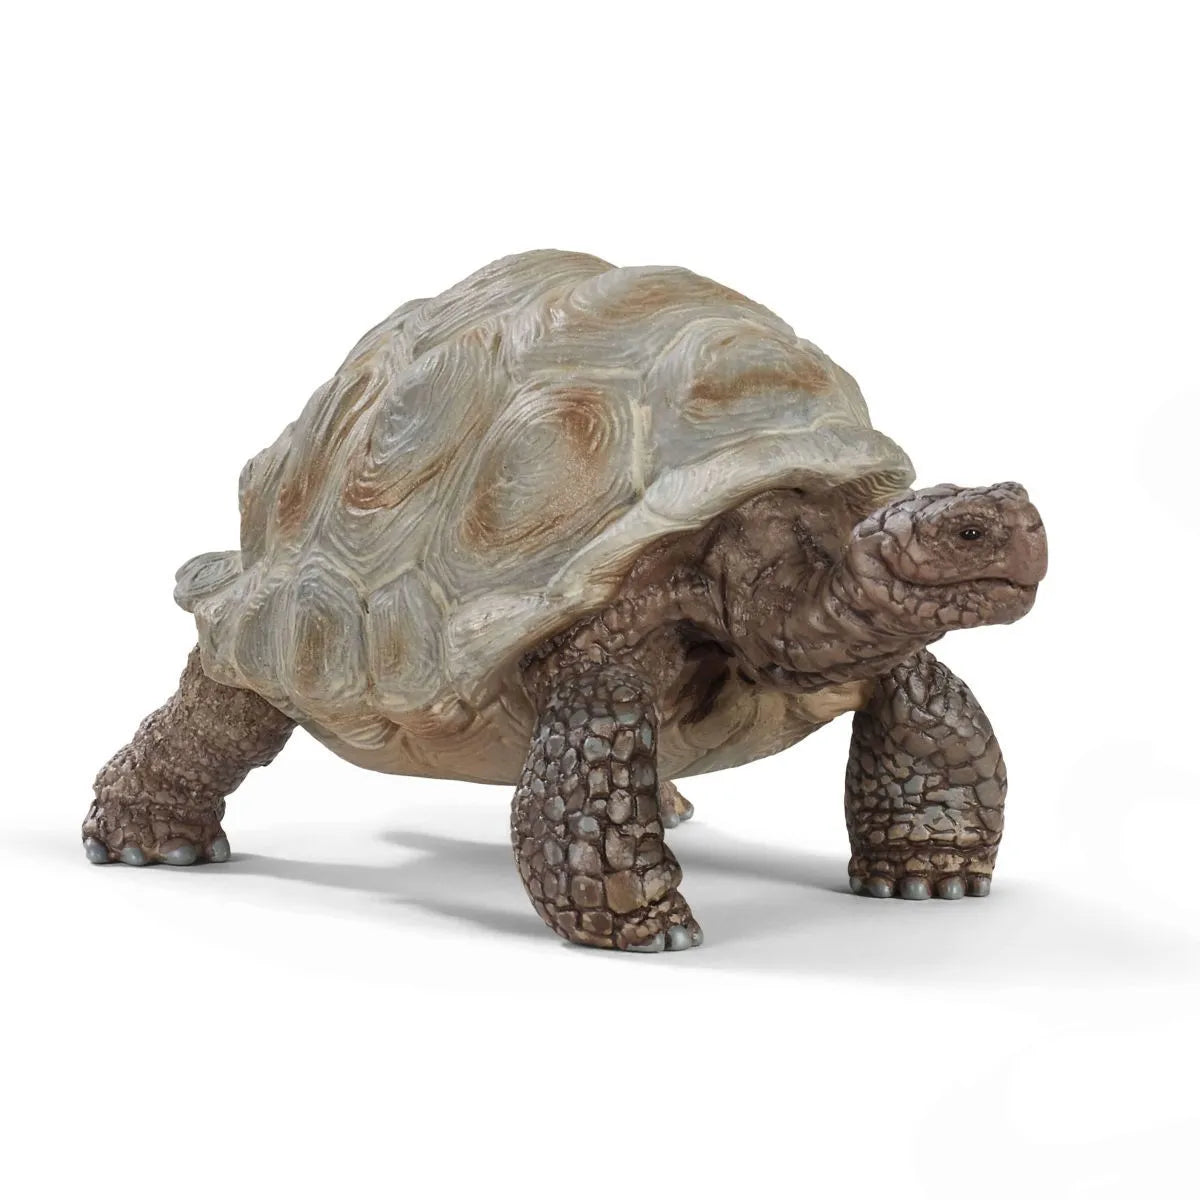 Schleich Wild Life Giant Tortoise 14824